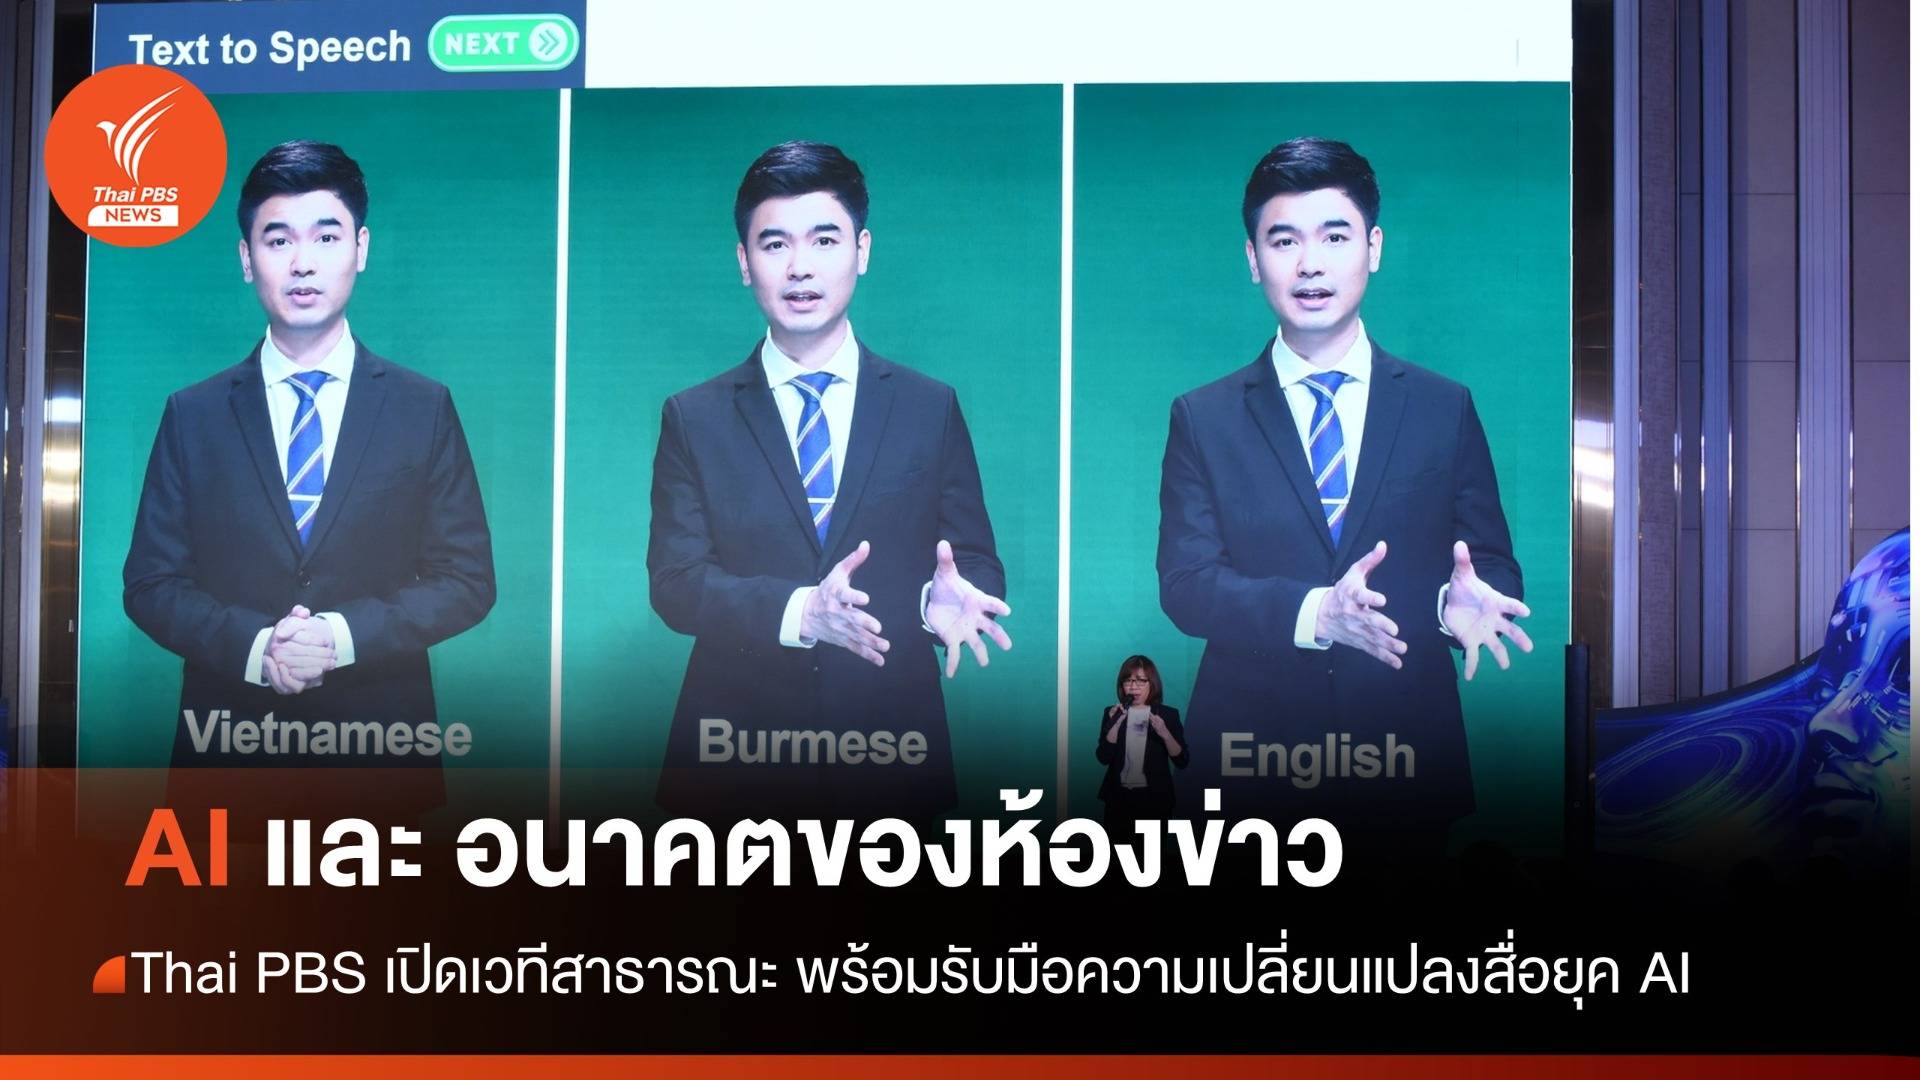 Thai PBS เปิดเวทีสาธารณะ "AI และอนาคตของห้องข่าว" รับมือสื่อยุค AI 